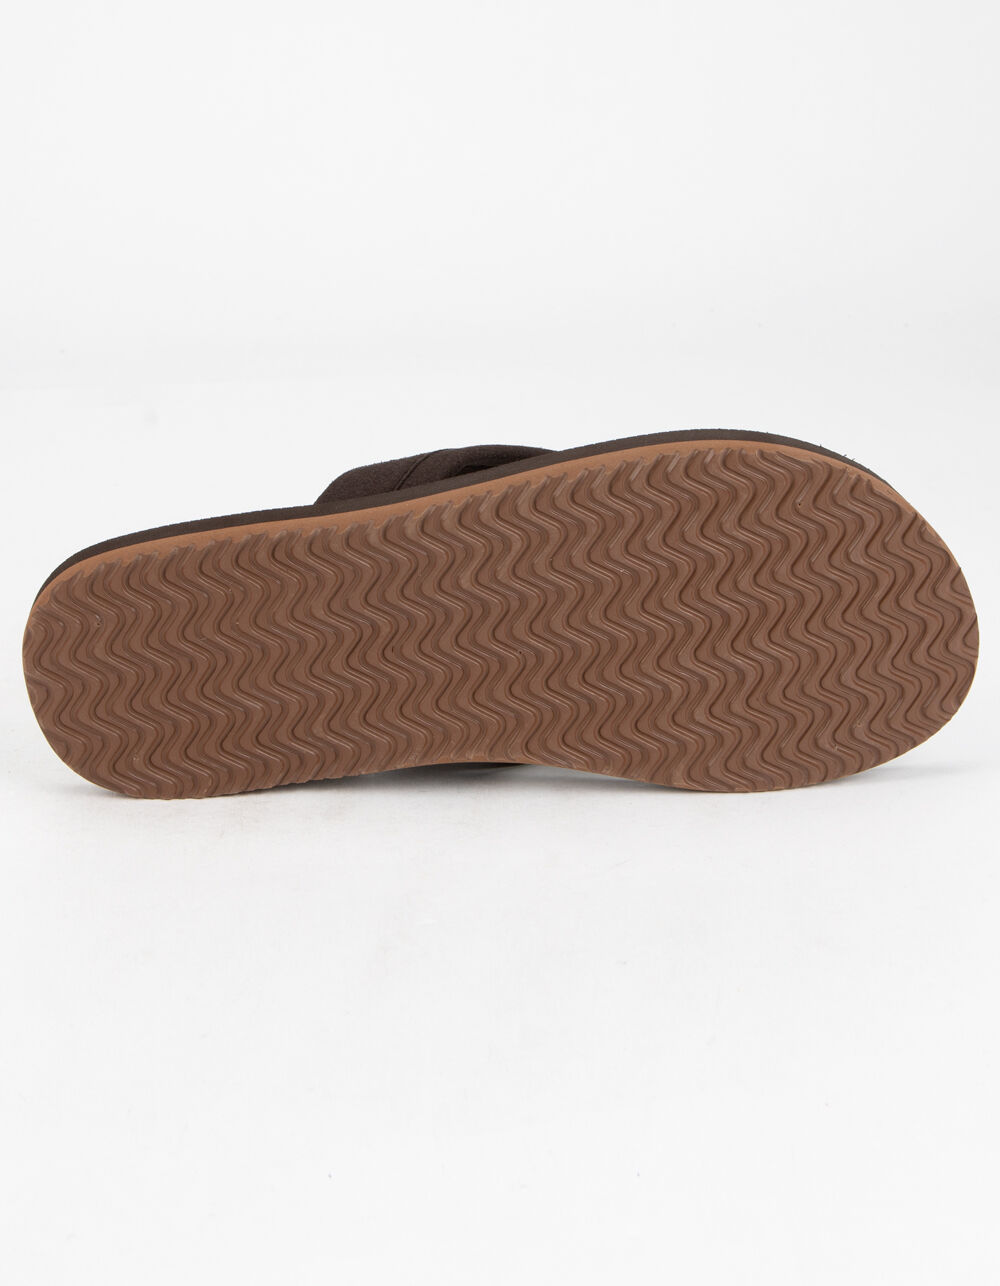 CORDS Comfort Waves Mens Sandals - BROWN | Tillys